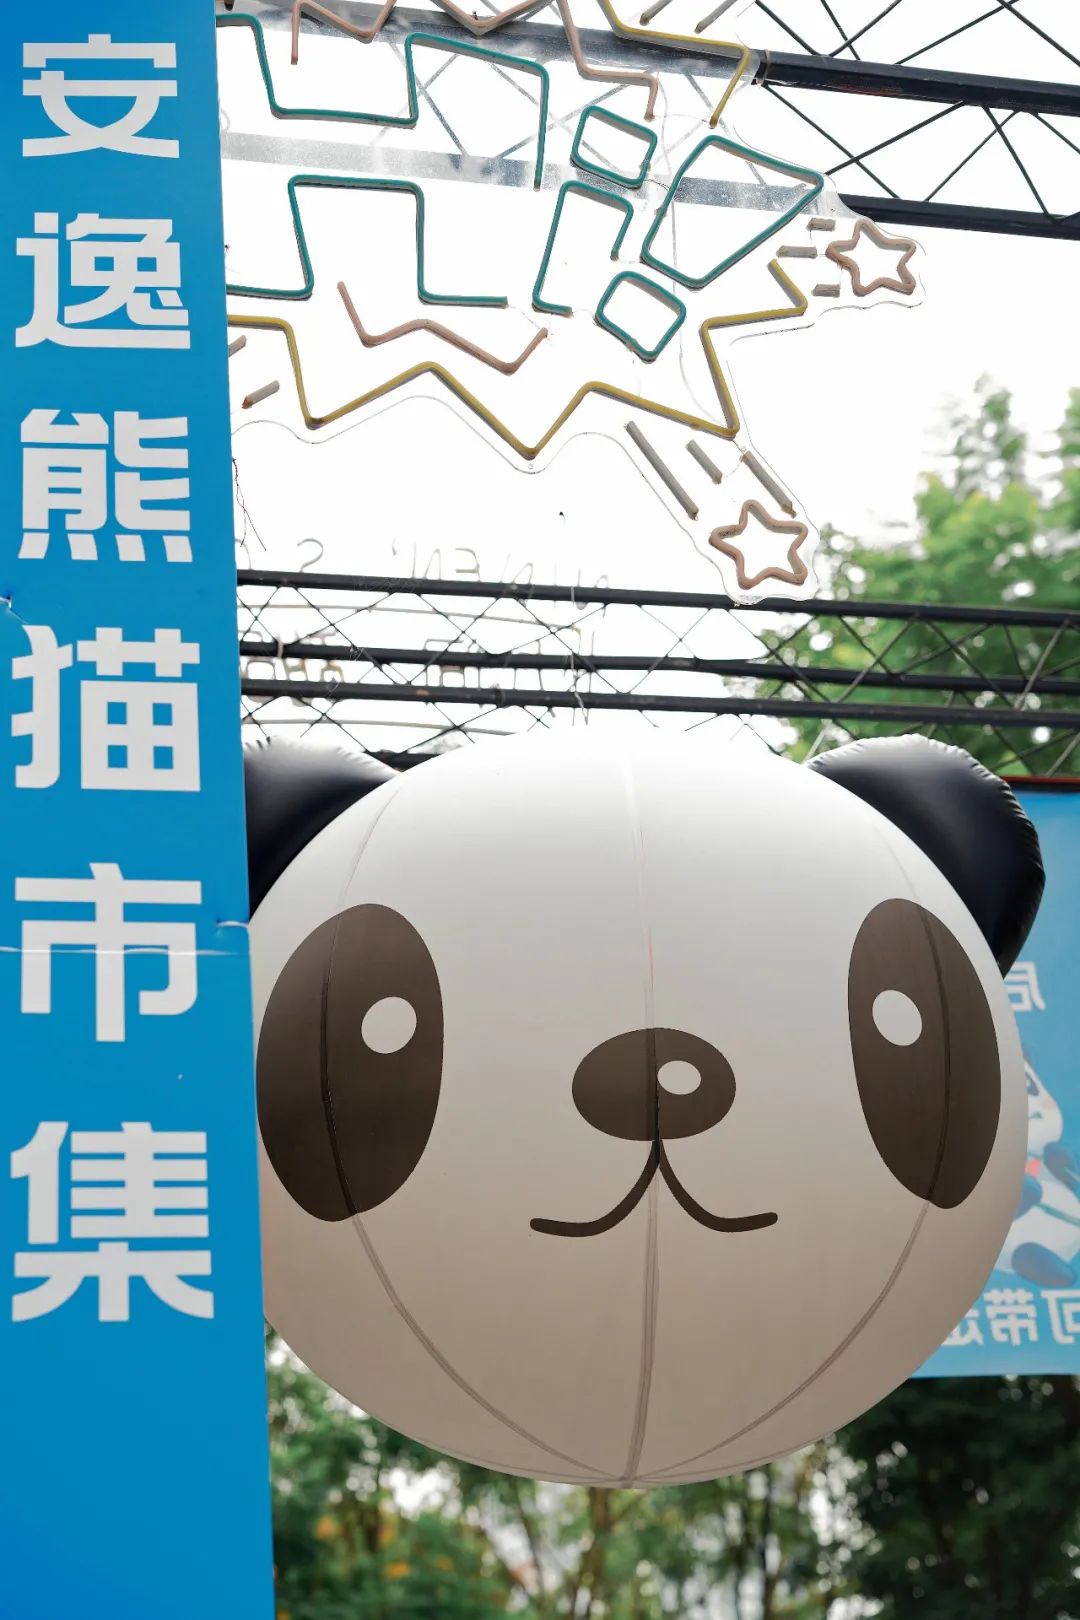 支付宝「安逸熊猫」市集in 成都猛追湾- 营销活动案例库